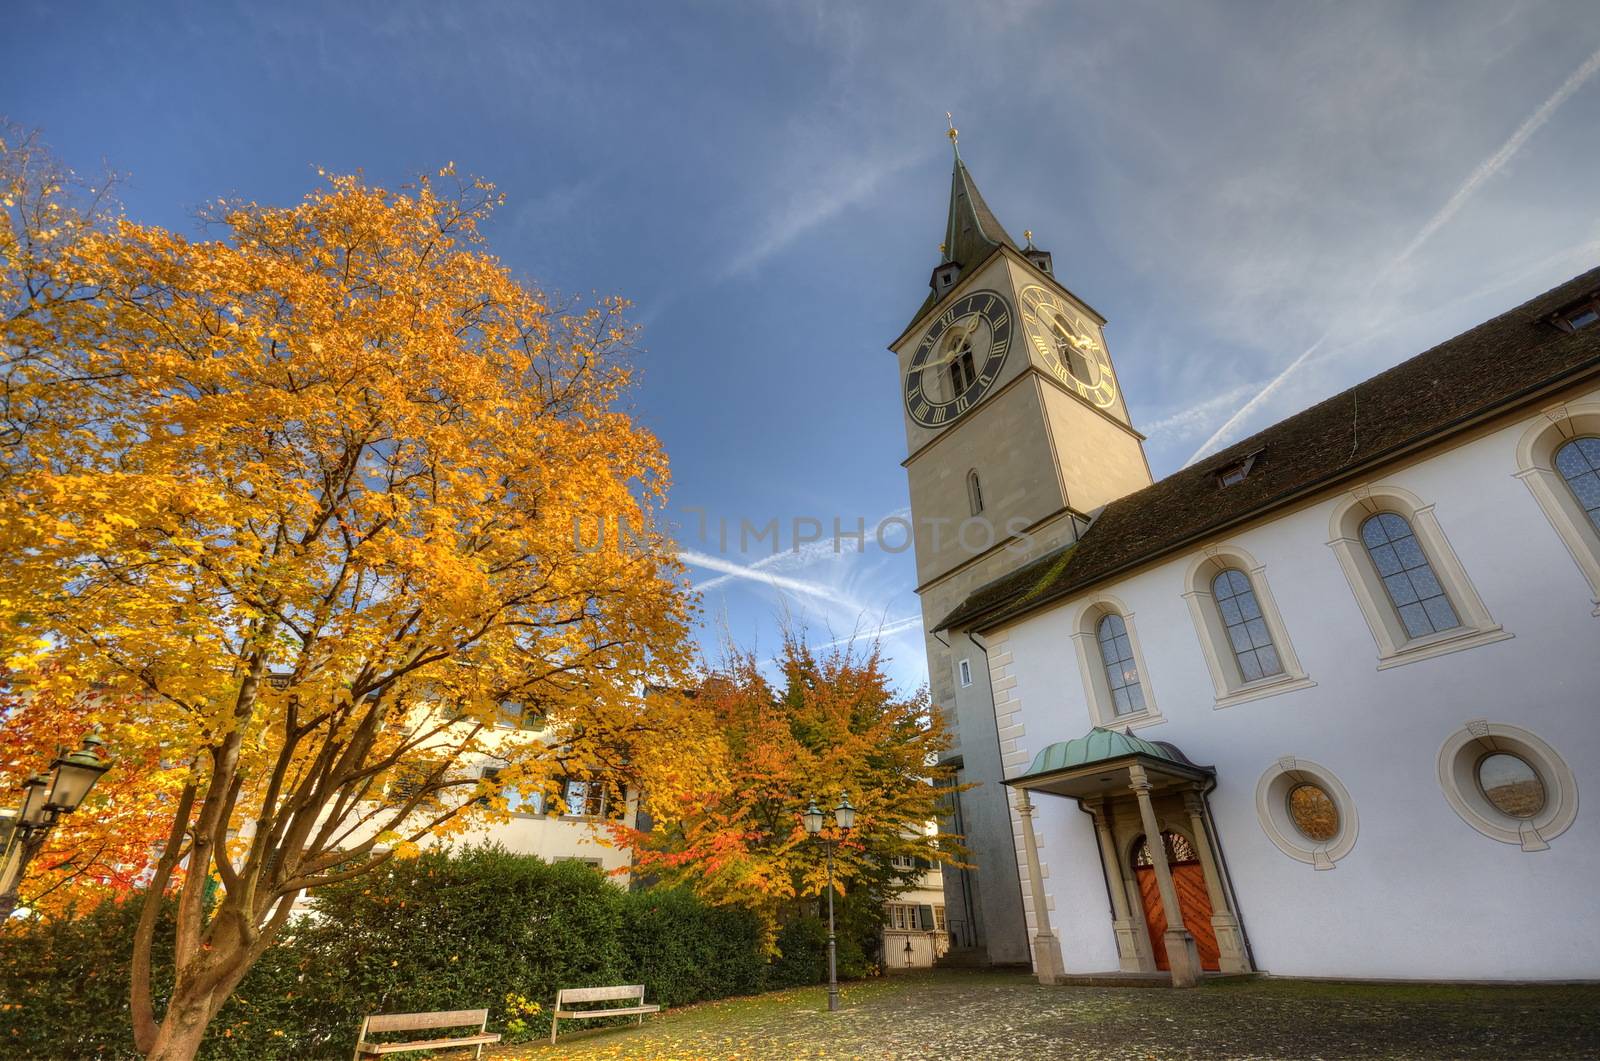 Church in Zurich, Switzerland at autumn by anderm